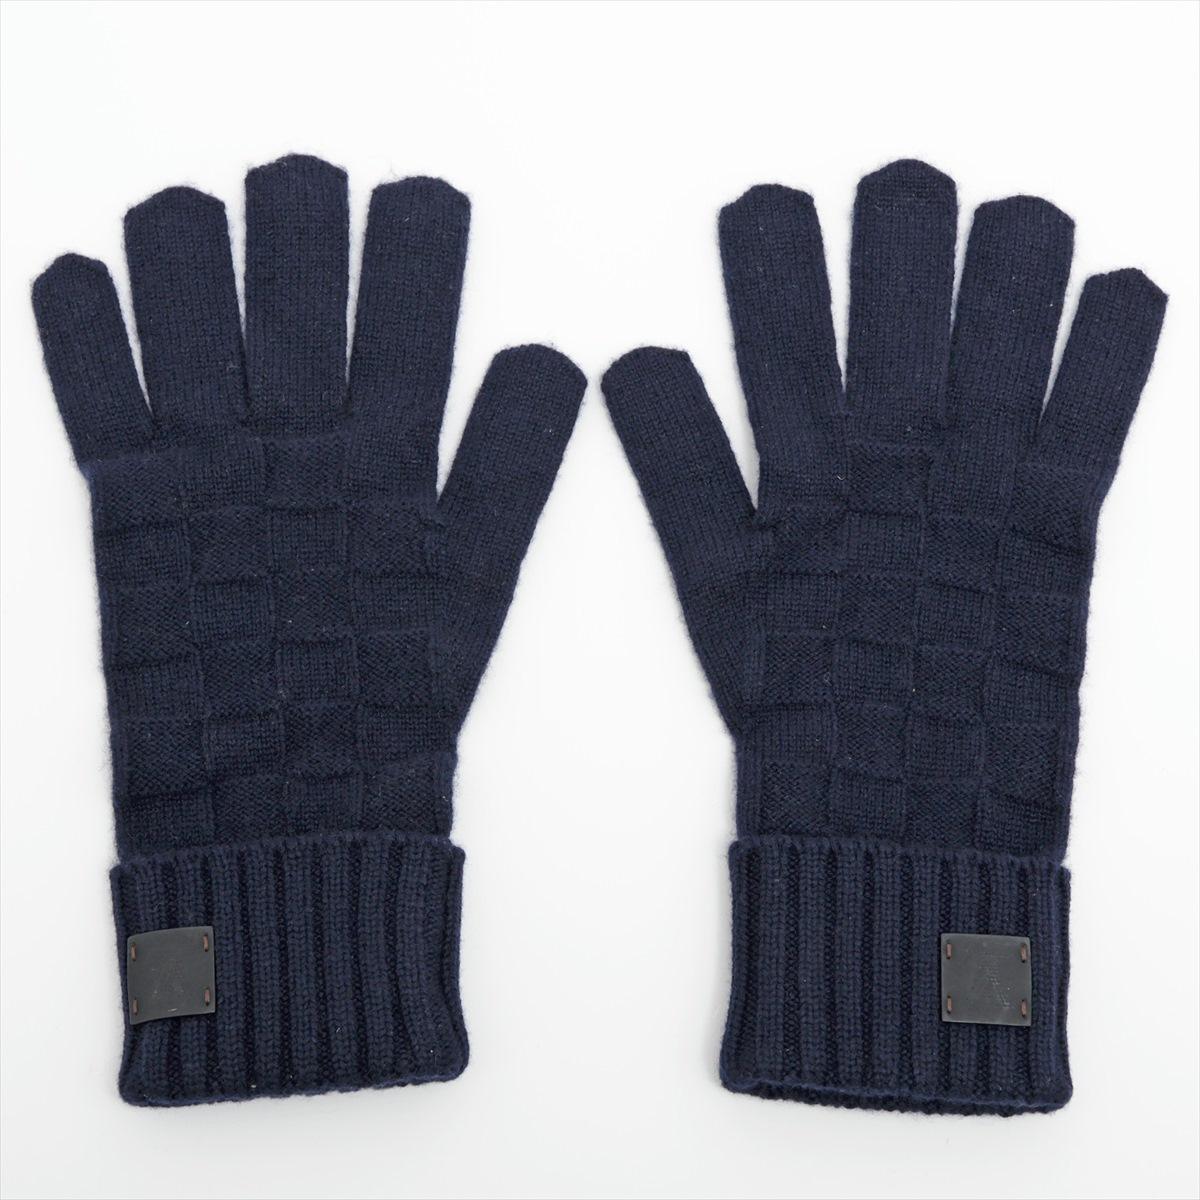 Die Louis Vuitton Damier Handschuhe aus Kaschmir in Marineblau sind ein luxuriöses und stilvolles Accessoire, das Mode und Wärme nahtlos miteinander verbindet. Die Handschuhe sind mit einem ikonischen Damier-Muster versehen, das das zeitlose und